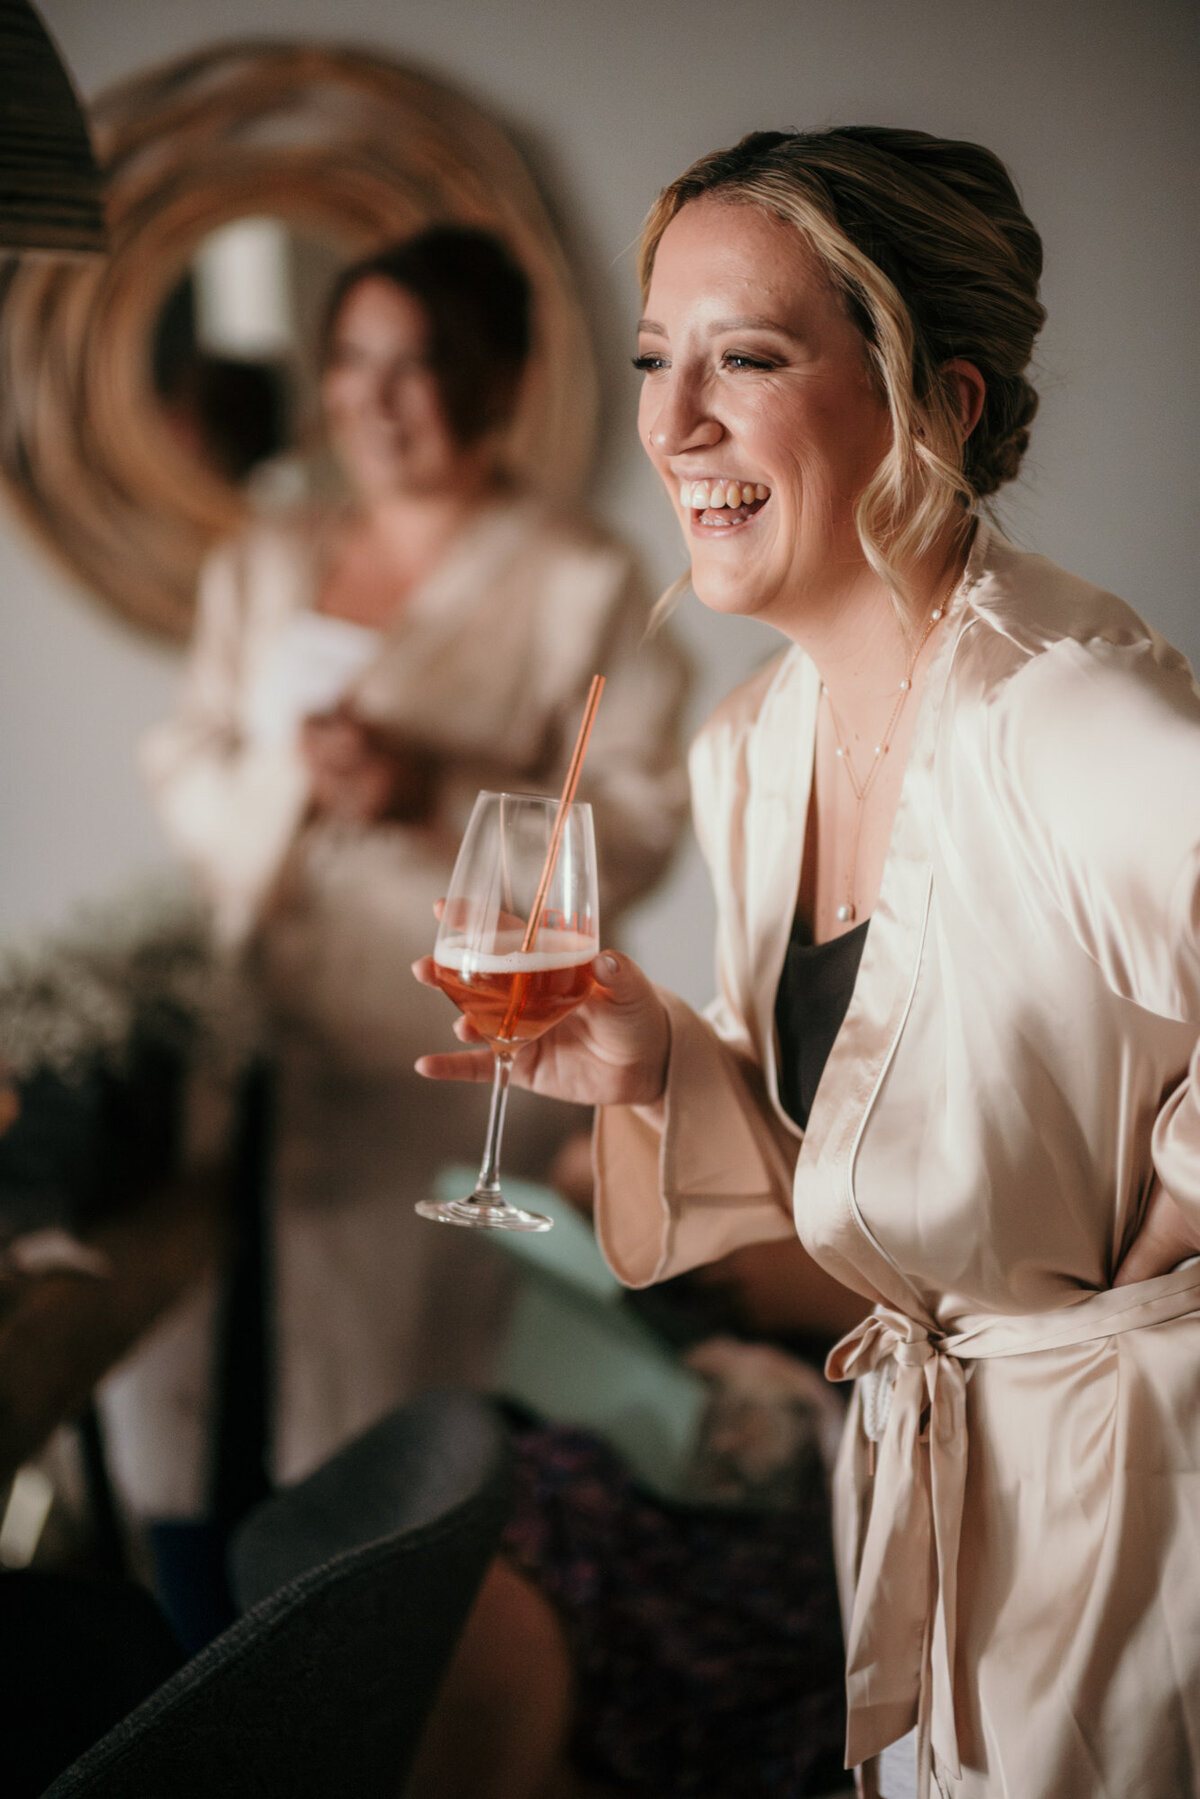 Eine der Brautjungfern in einem Satin-Bademantel lacht fröhlich mit einem Glas Sekt in der Hand.